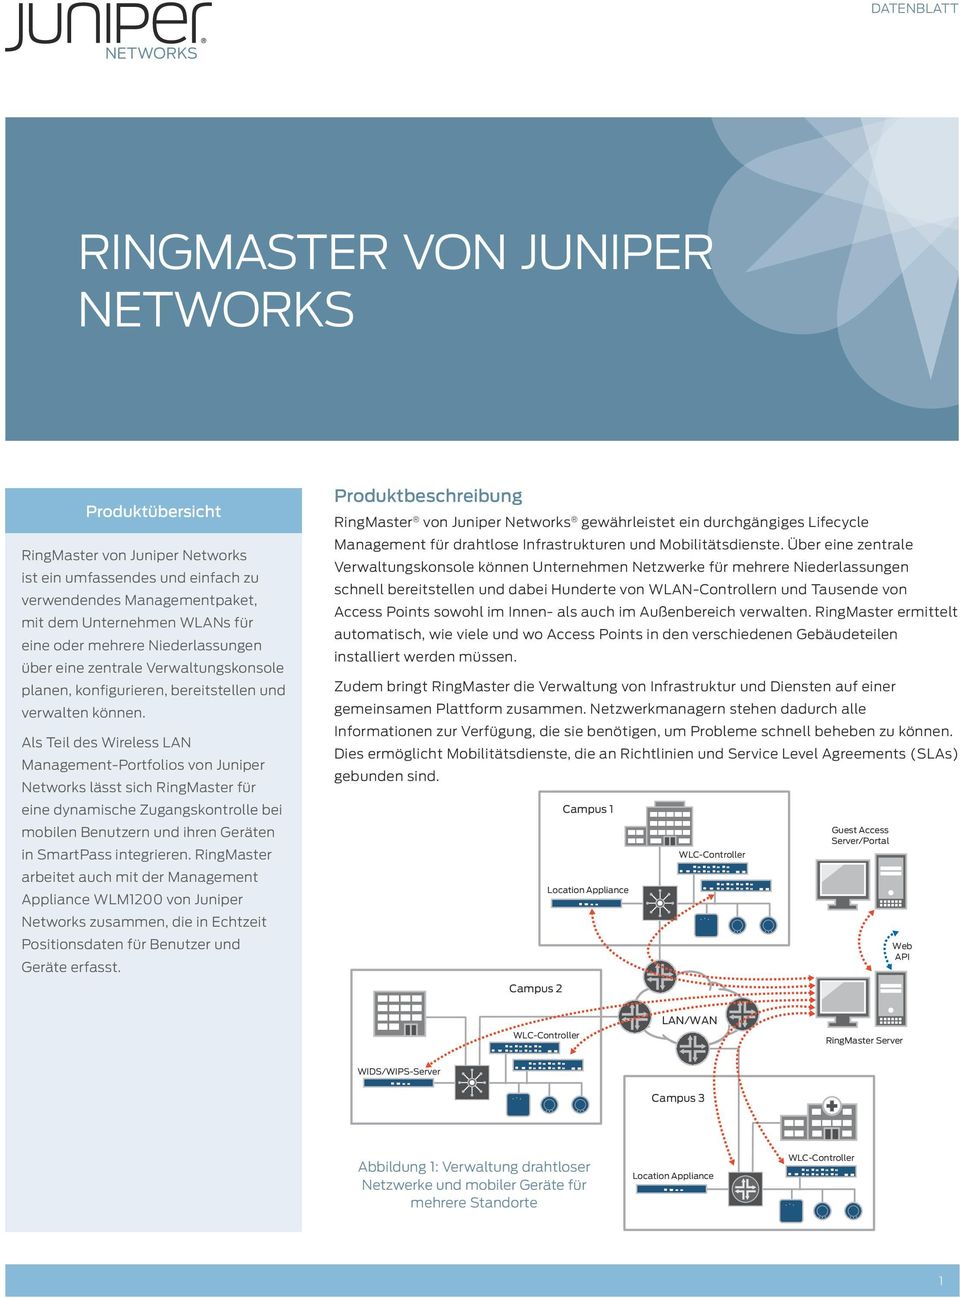 Als Teil des Wireless LAN Management-Portfolios von Juniper Networks lässt sich RingMaster für eine dynamische Zugangskontrolle bei mobilen Benutzern und ihren Geräten in SmartPass integrieren.